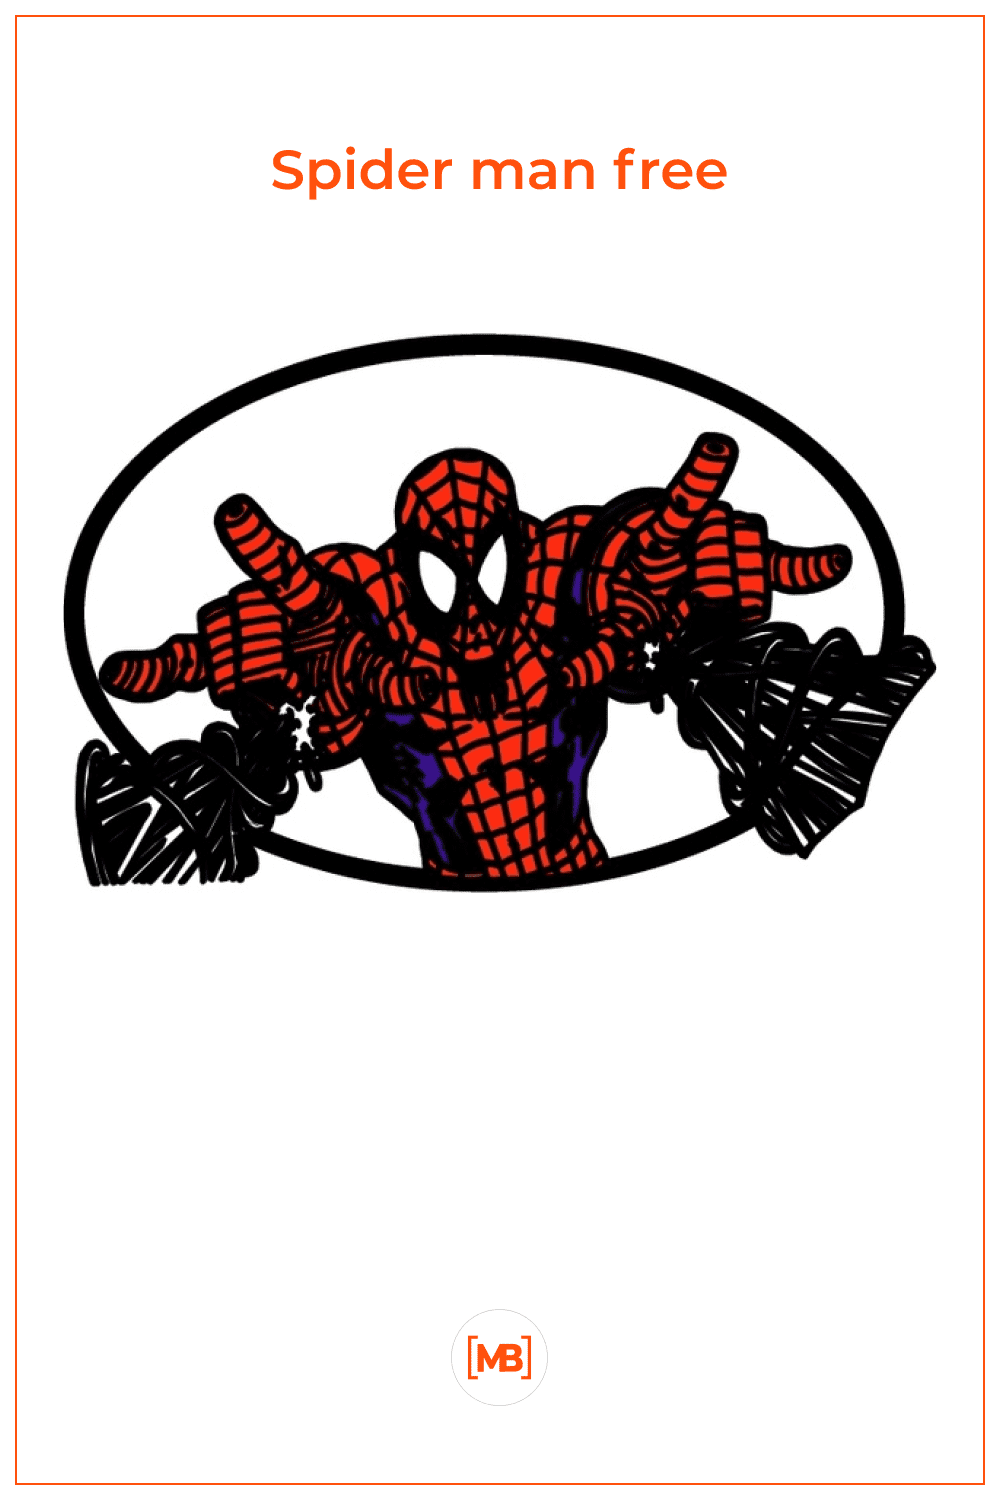 Spider man free.